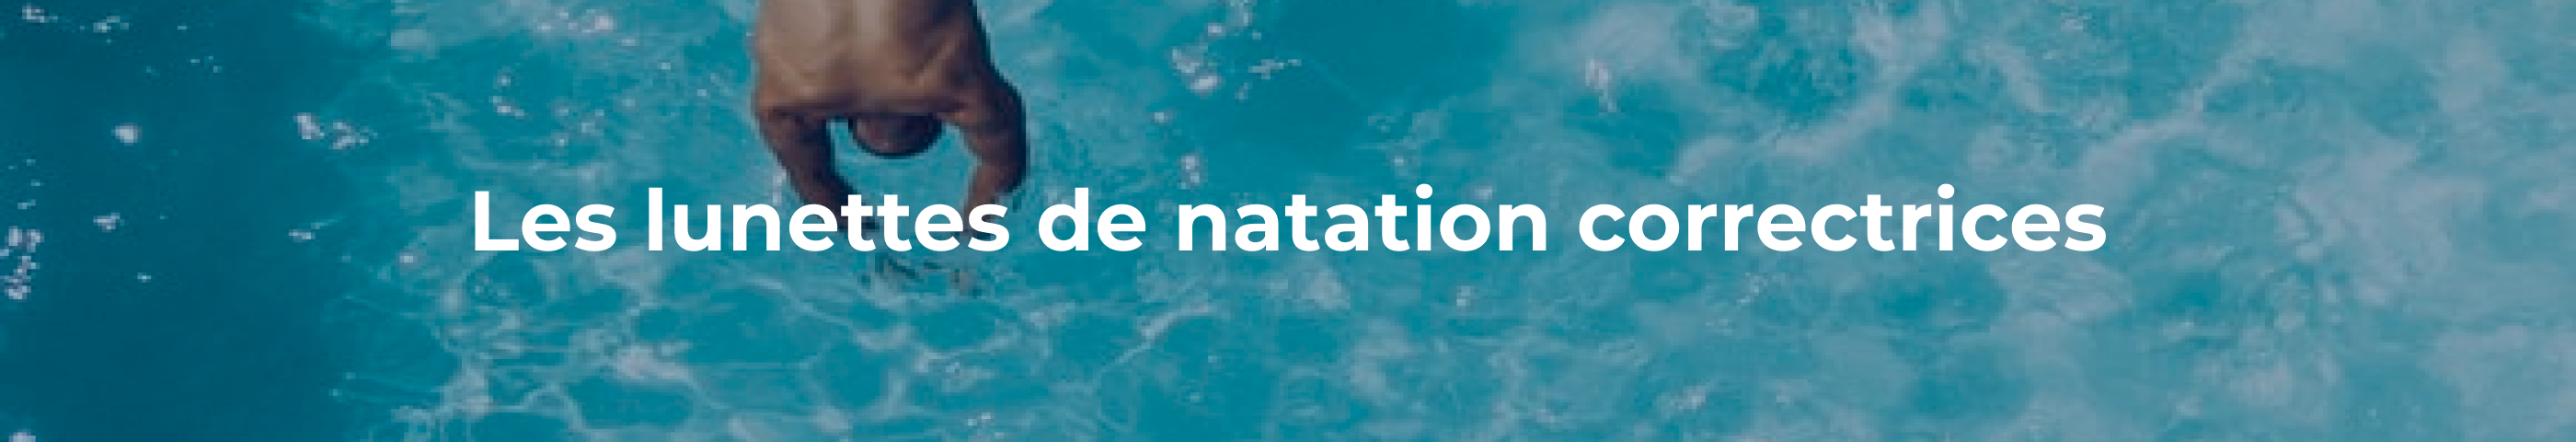 Lunettes de natation correctrices : Voyez Plus Clair Sous l'Eau ! -  Swimvision